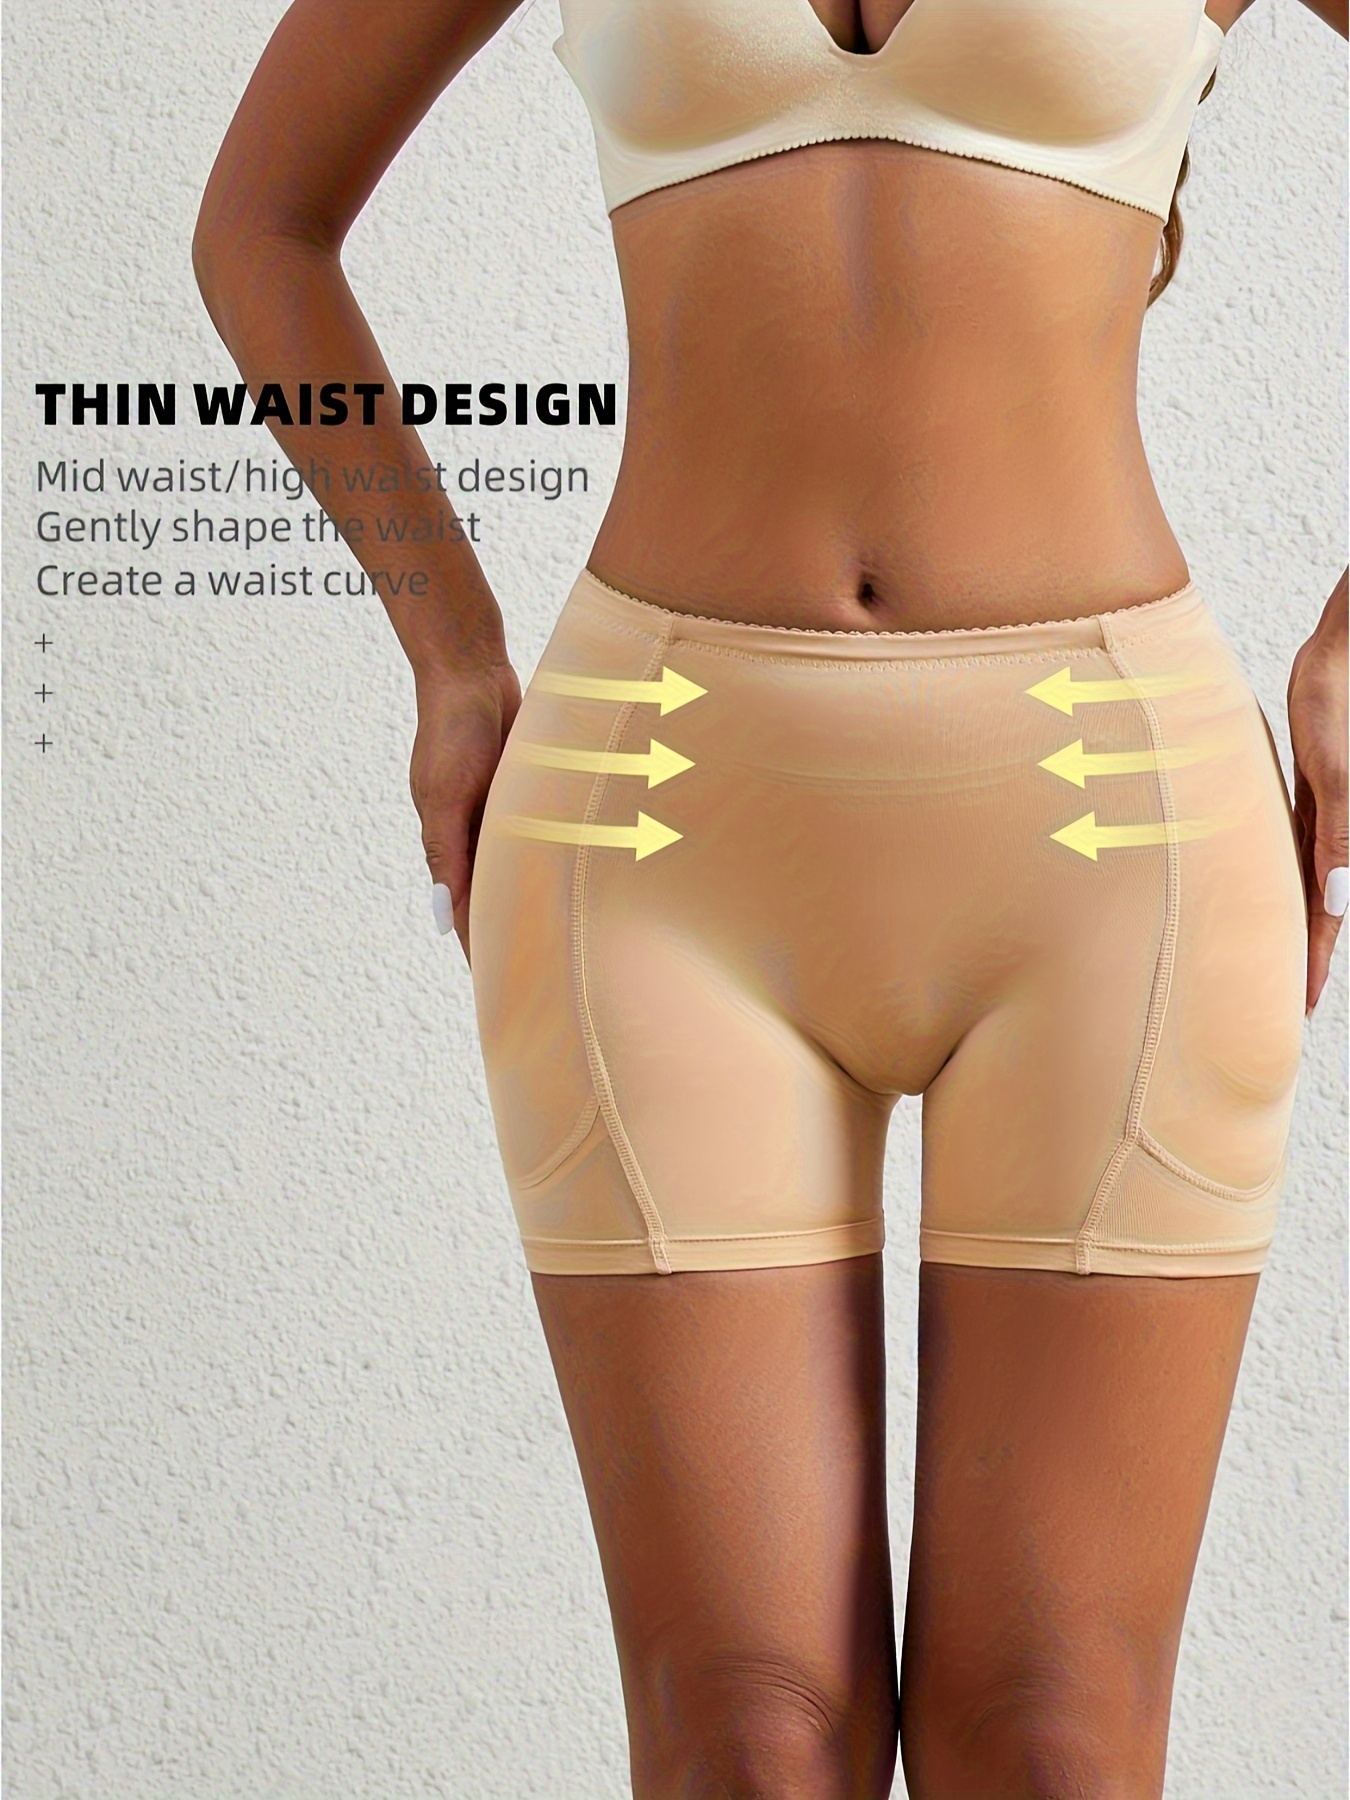 Women's Sponge Pad Buttock Shaper Panty